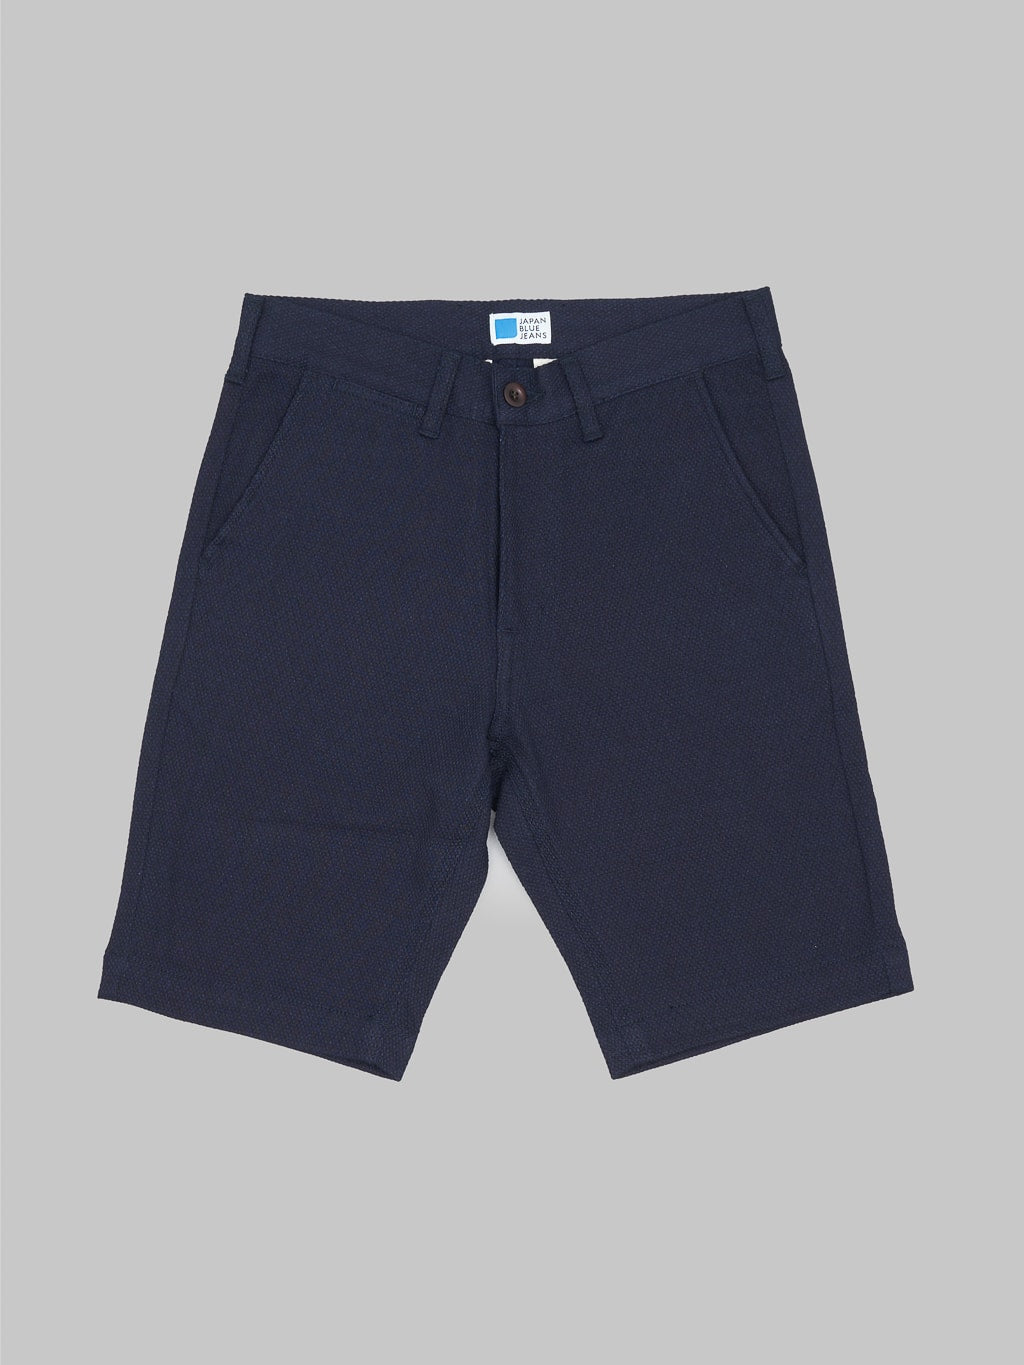 Japan Blue sashiko indigo jacquard shorts waist